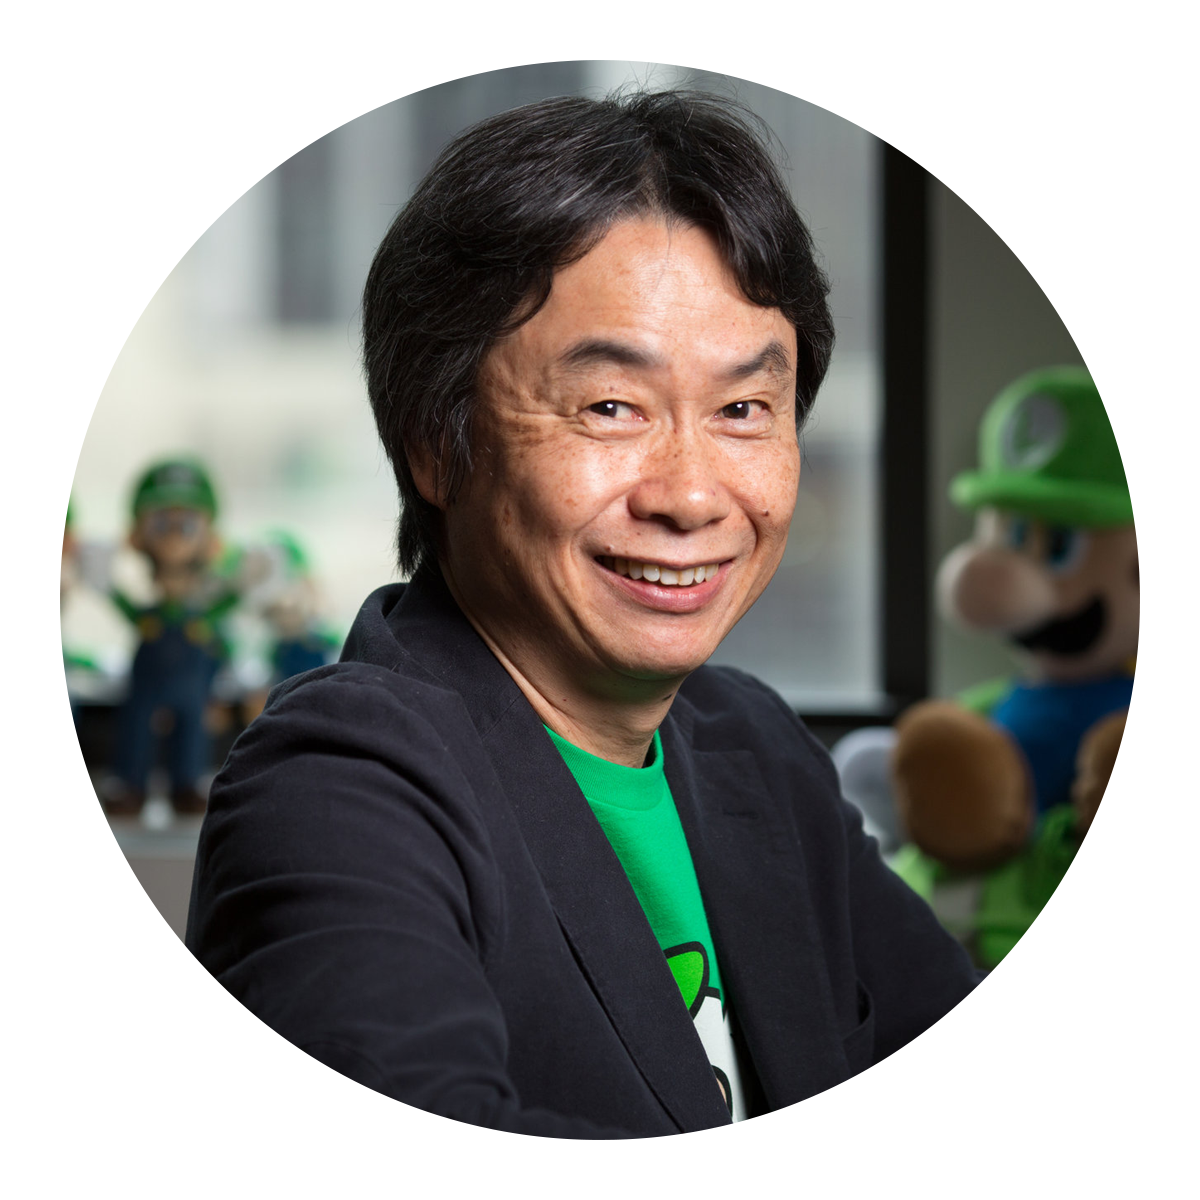 68 Fun Facts About Shigeru Miyamoto, by Shawn Laib